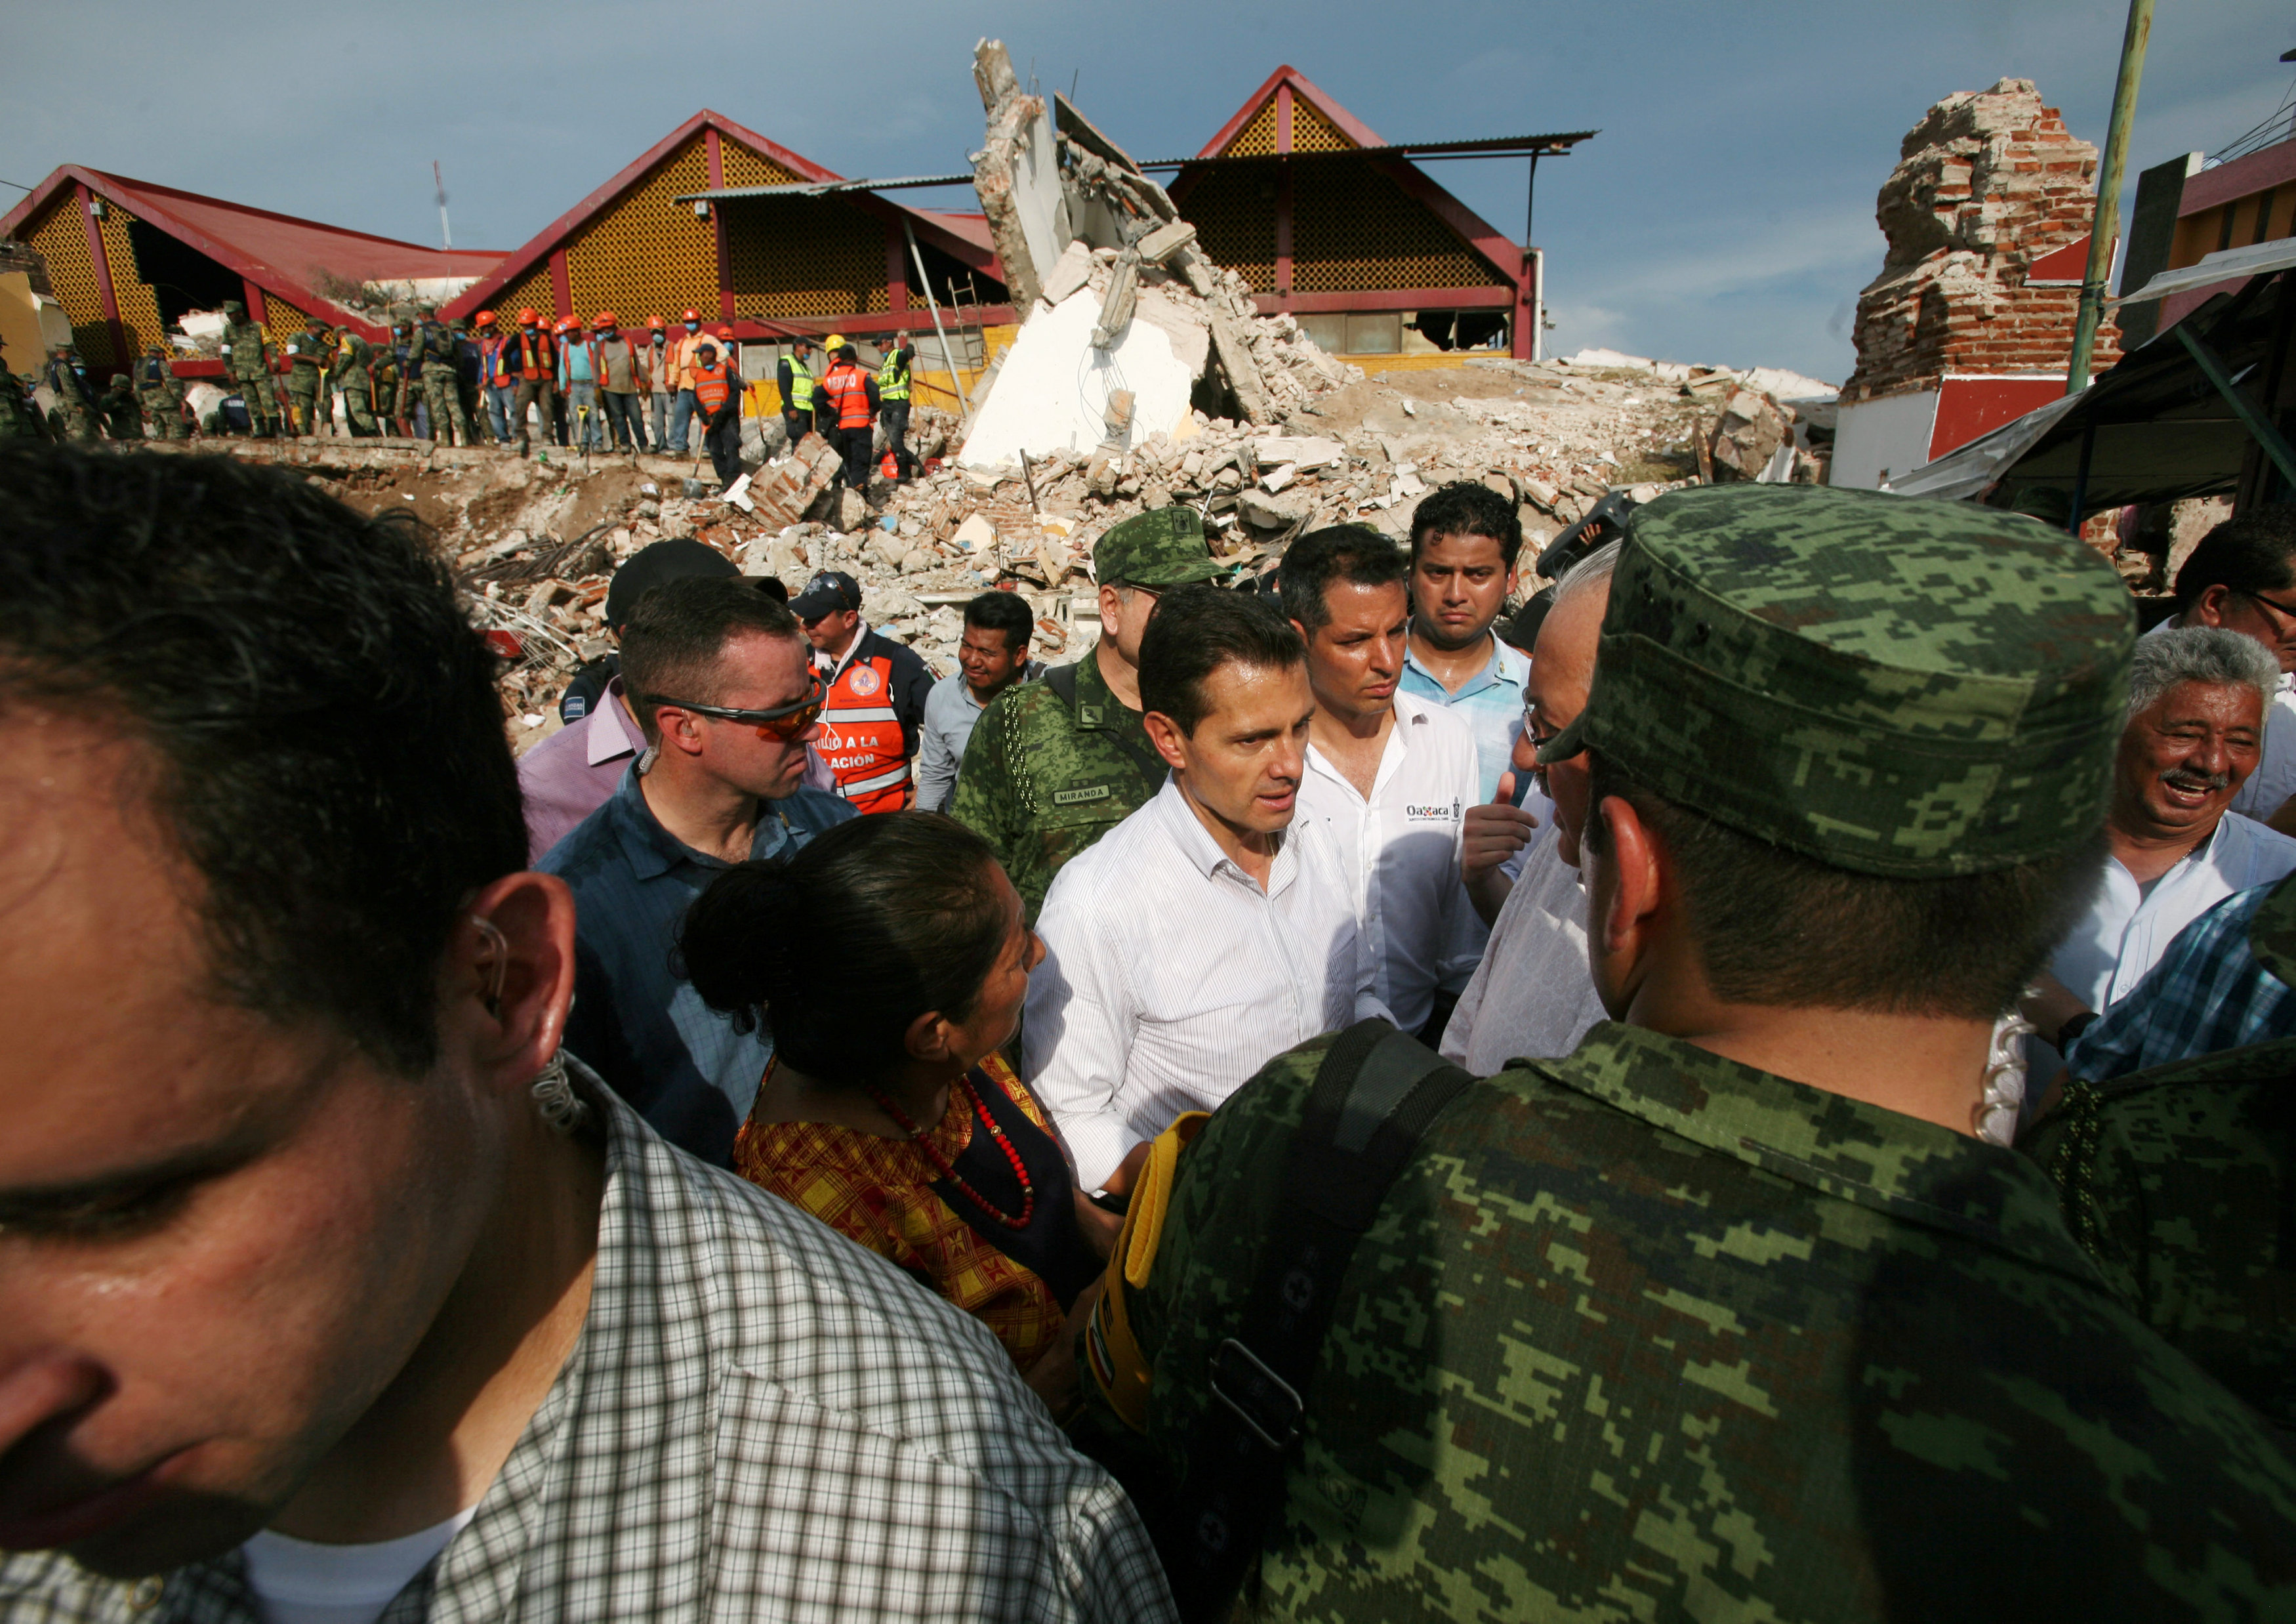 الرئيس المكسيكى انريكى بينا نييتو يزور المناطق المنكوبة جراء الزلزال